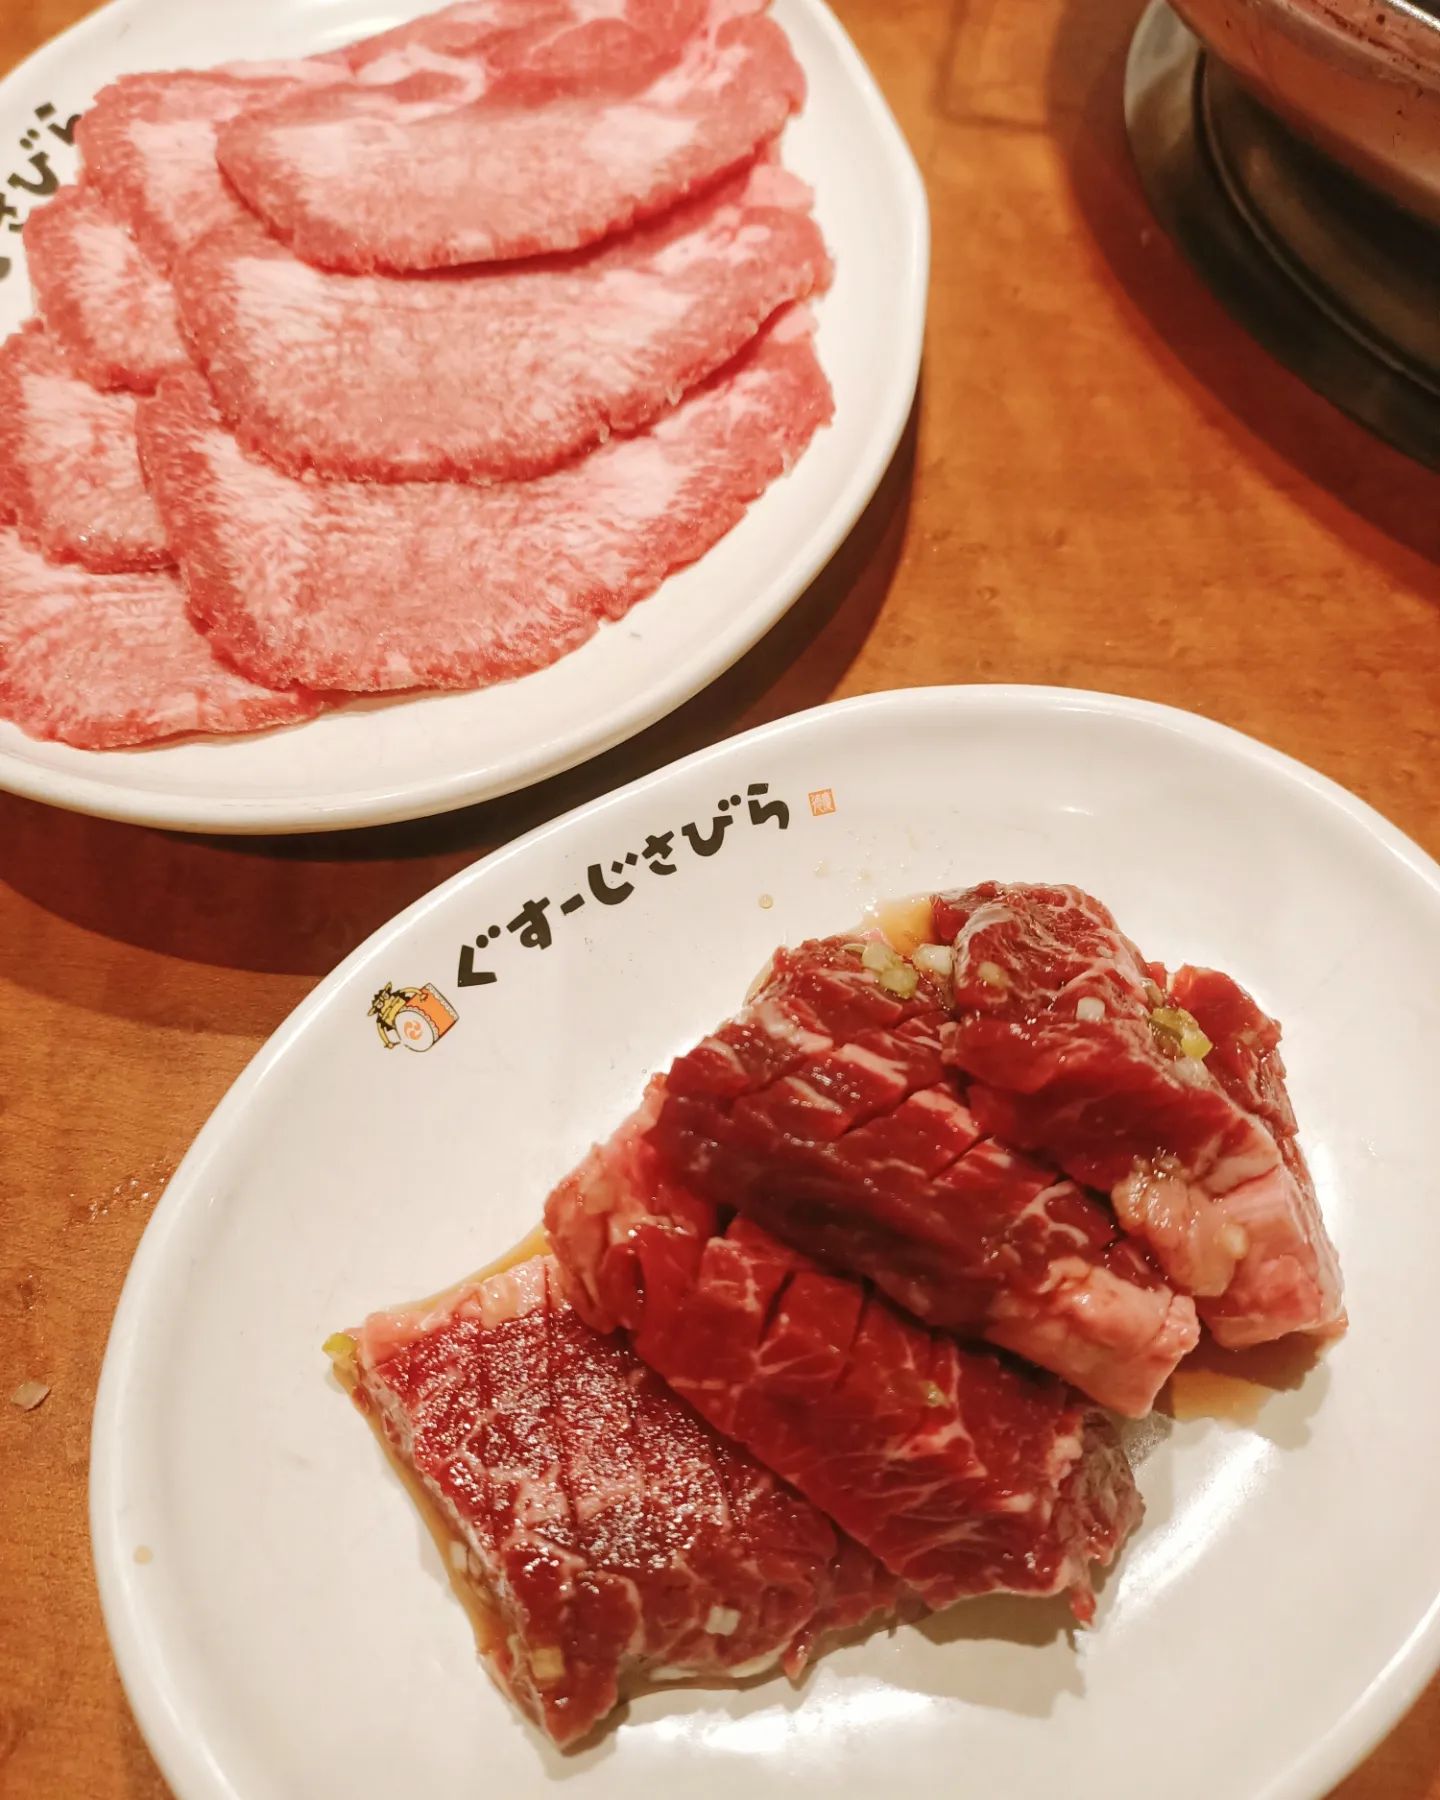 令人心情愉悅的咖哩牆 🍛🍛🍛
我超愛逛異地的超市，總是能有新奇的發現～
隨時都能吃到便宜又美味的生魚片好幸福！！！
#curry #okinawa #japan #travel #food #foodporn